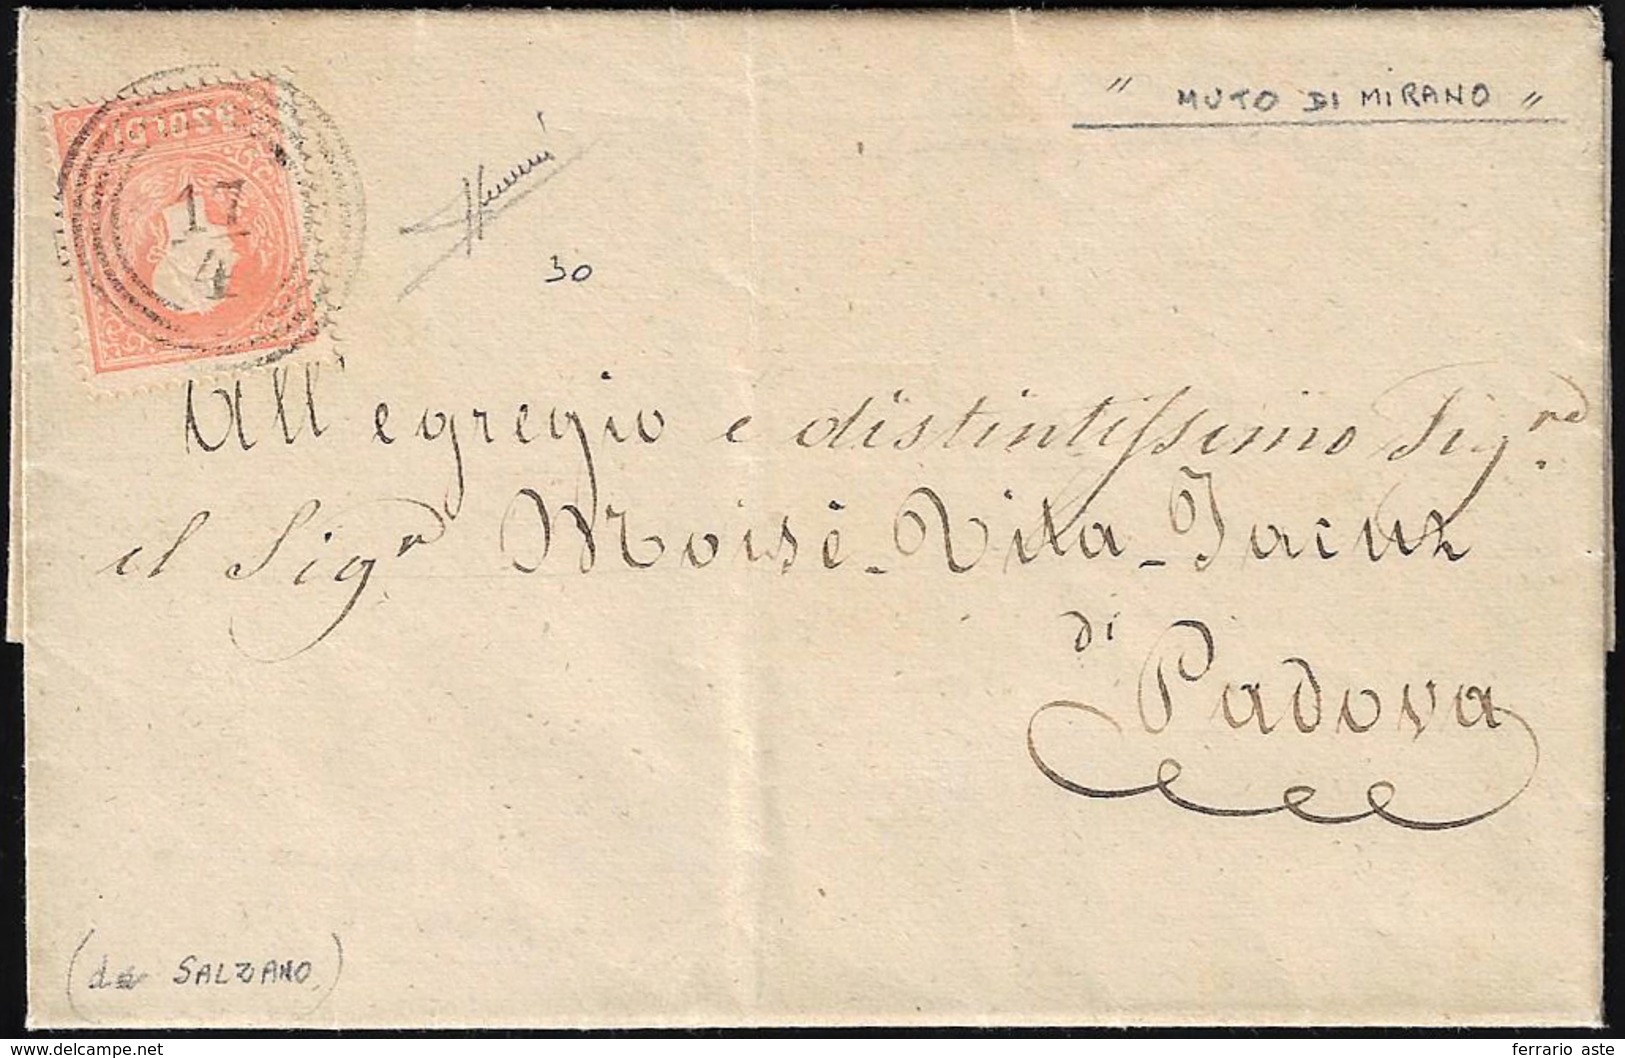 MIRANO, C4/M Non Catalogato Su Questa Emissione - 5 Soldi (30), Perfetto, Su Lettera Del 17/4/1859 P... - Lombardo-Vénétie